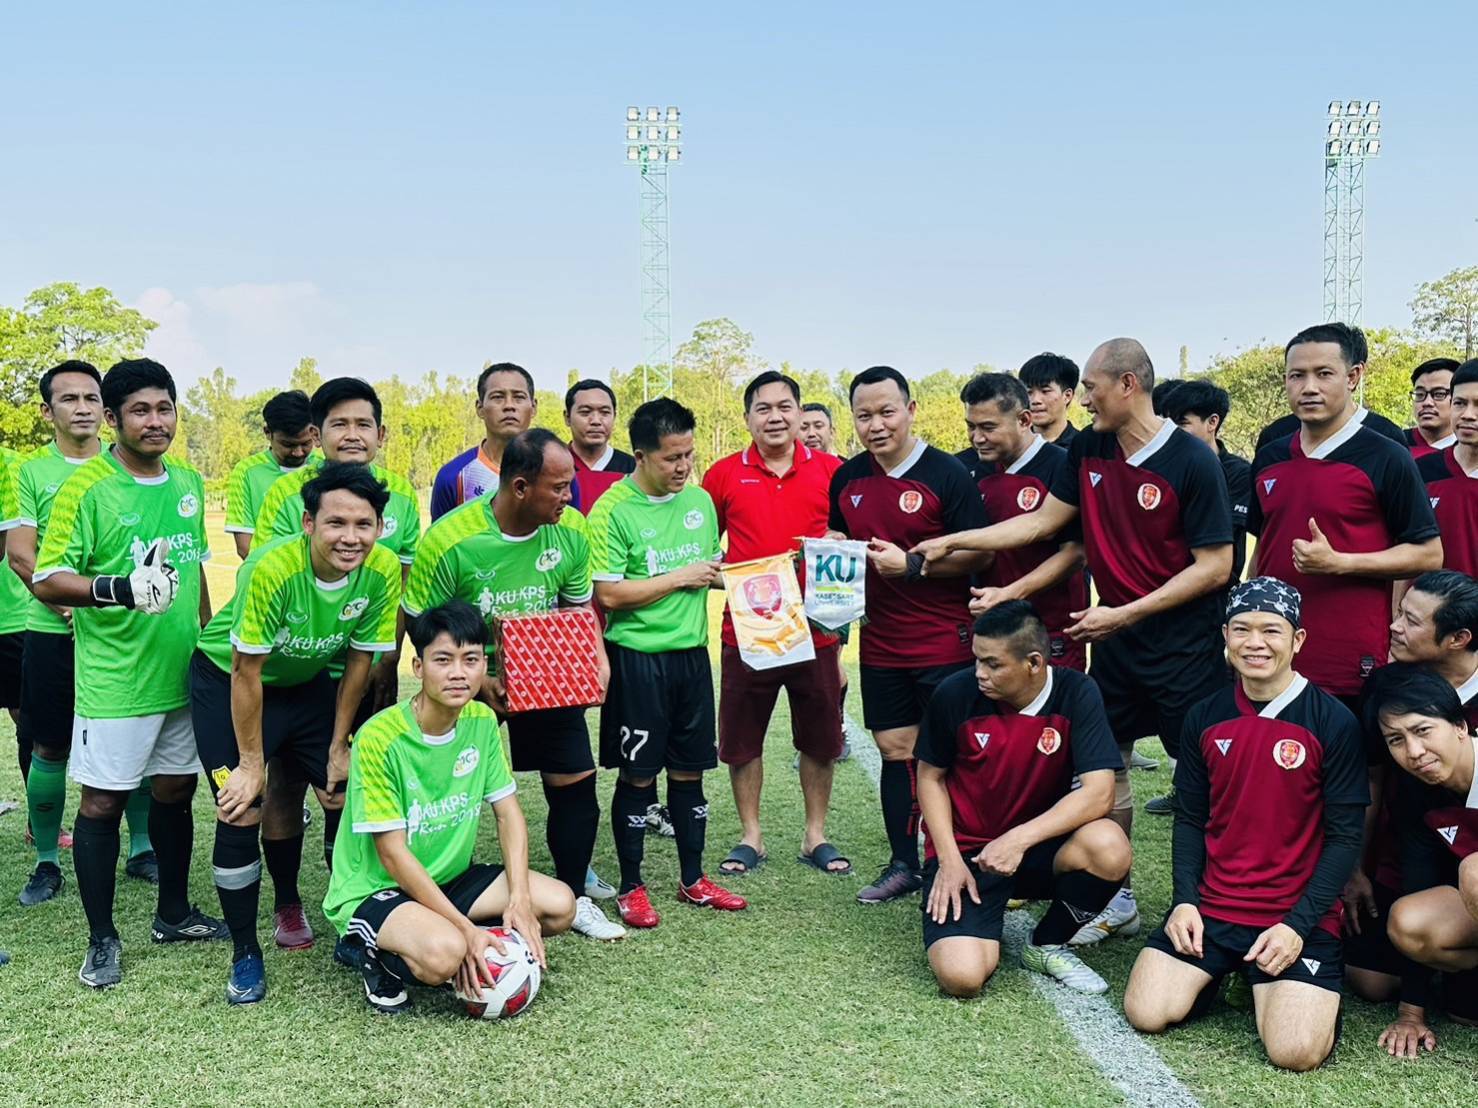 การแข่งขันฟุตบอลกระชับมิตร ทีมบุคลากรมหาวิทยาลัยเกษตรศาสตร์ วิทยาเขตกำแพงแสนกับชมรมฟุตบอลสำนักงานเลขาธิการวุฒิสภา